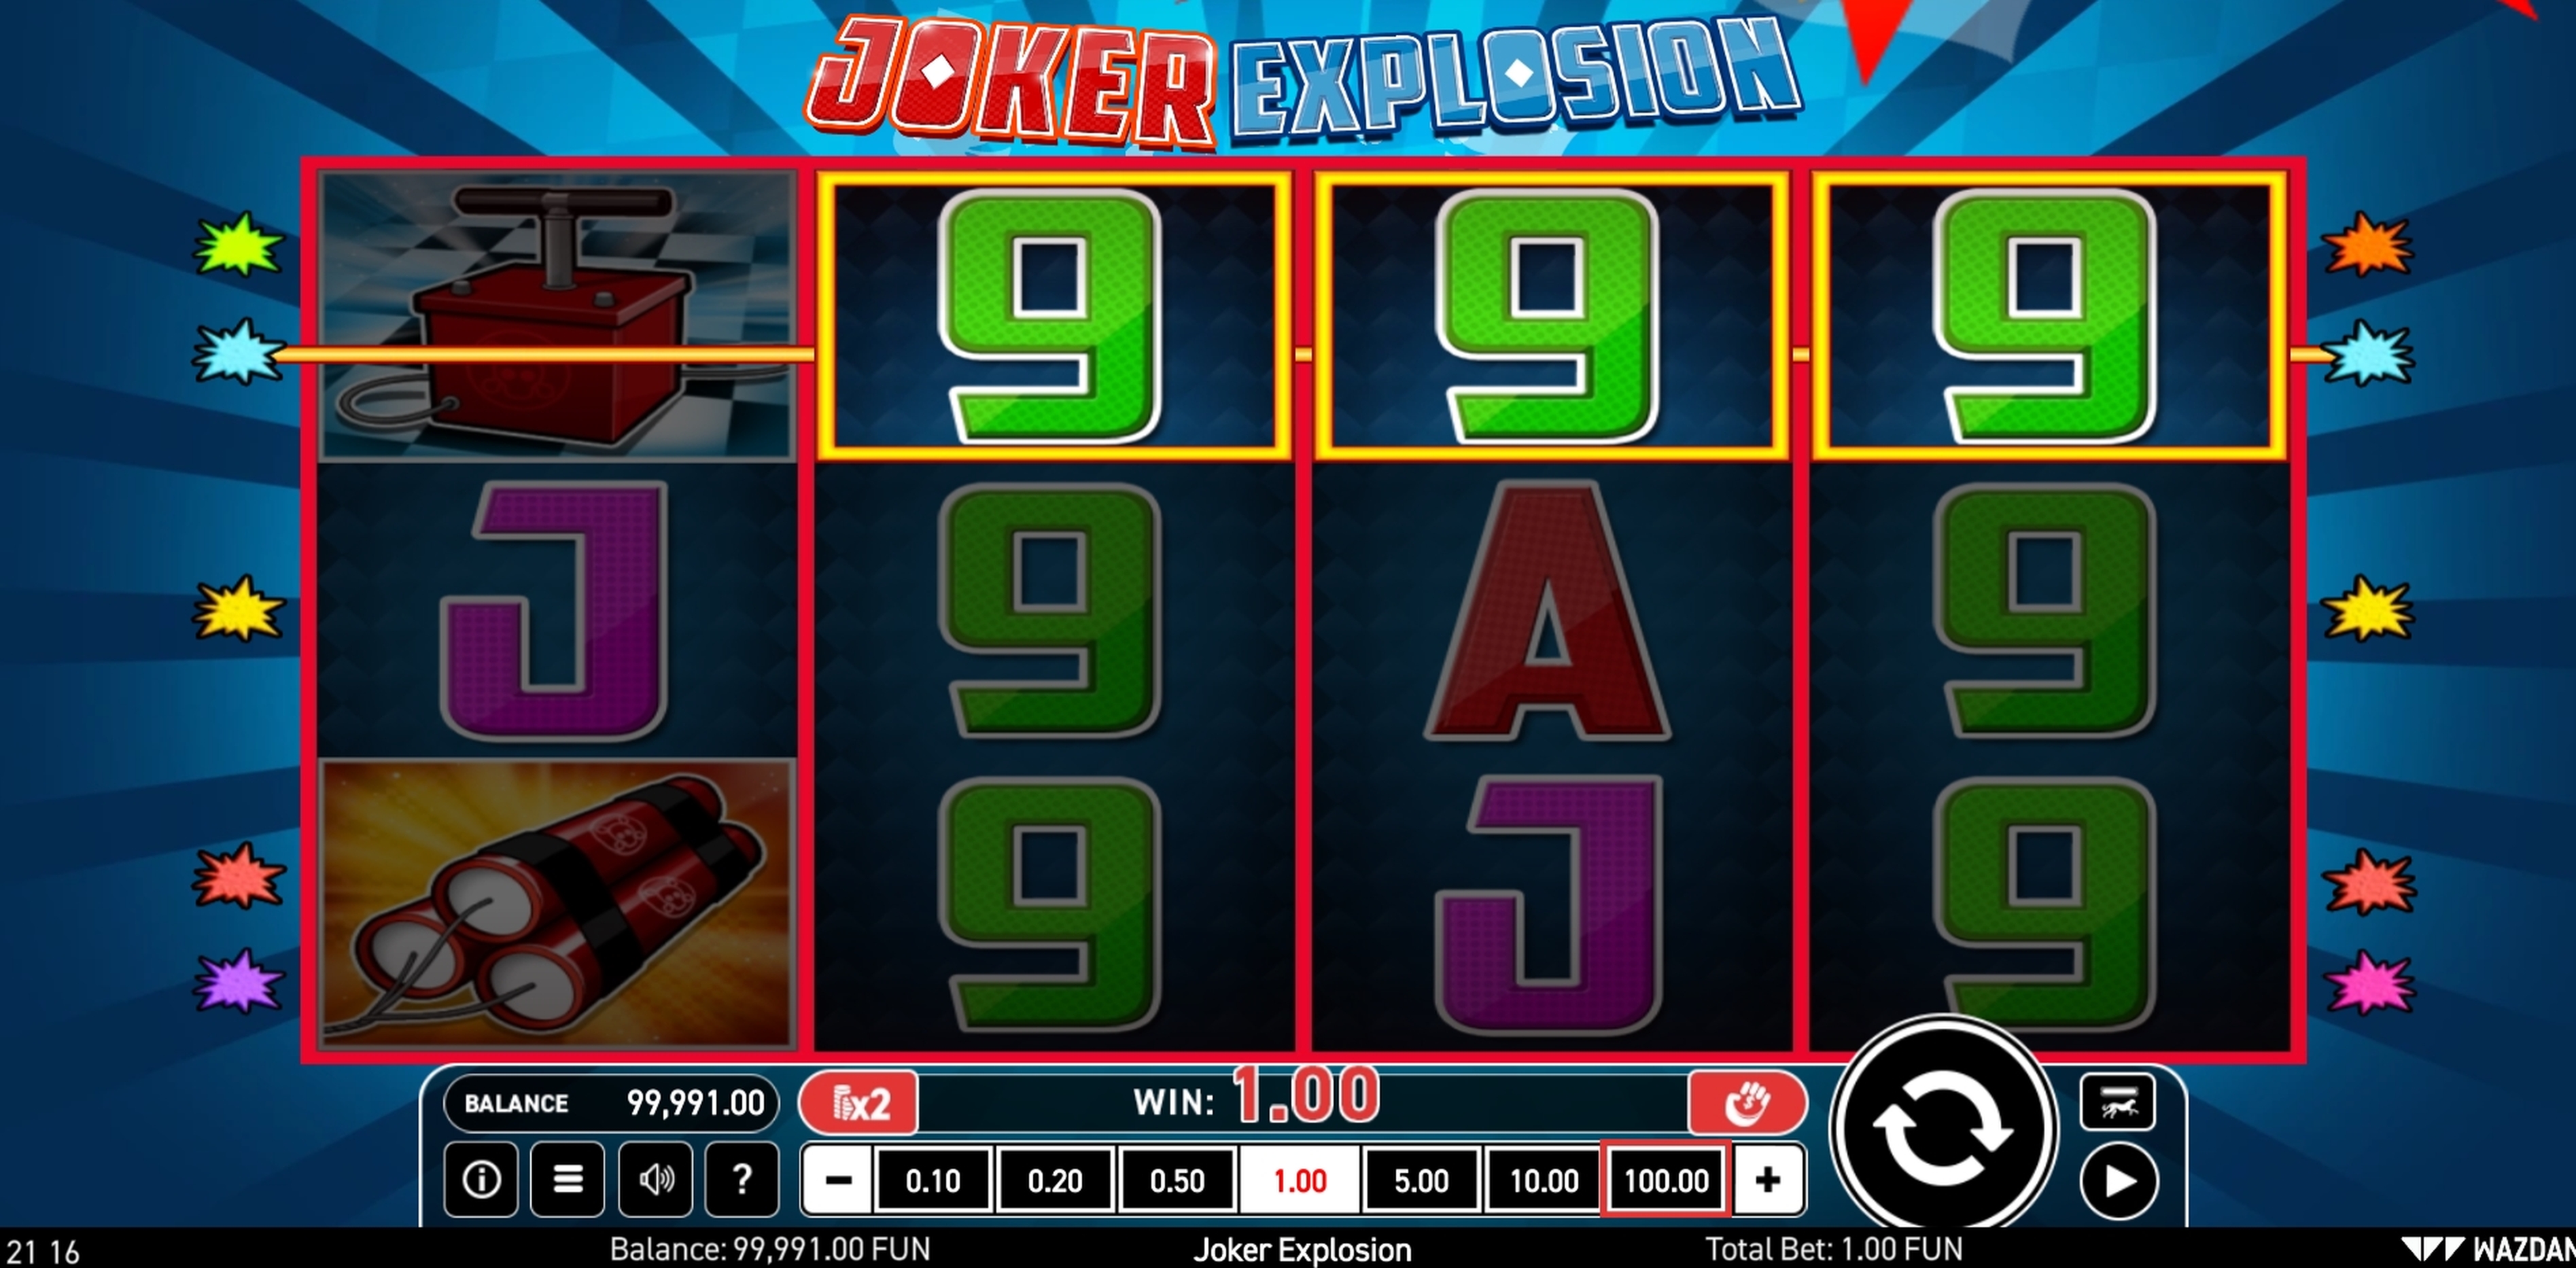 Win Money in Joker Explosion Free Slot Game by Wazdan